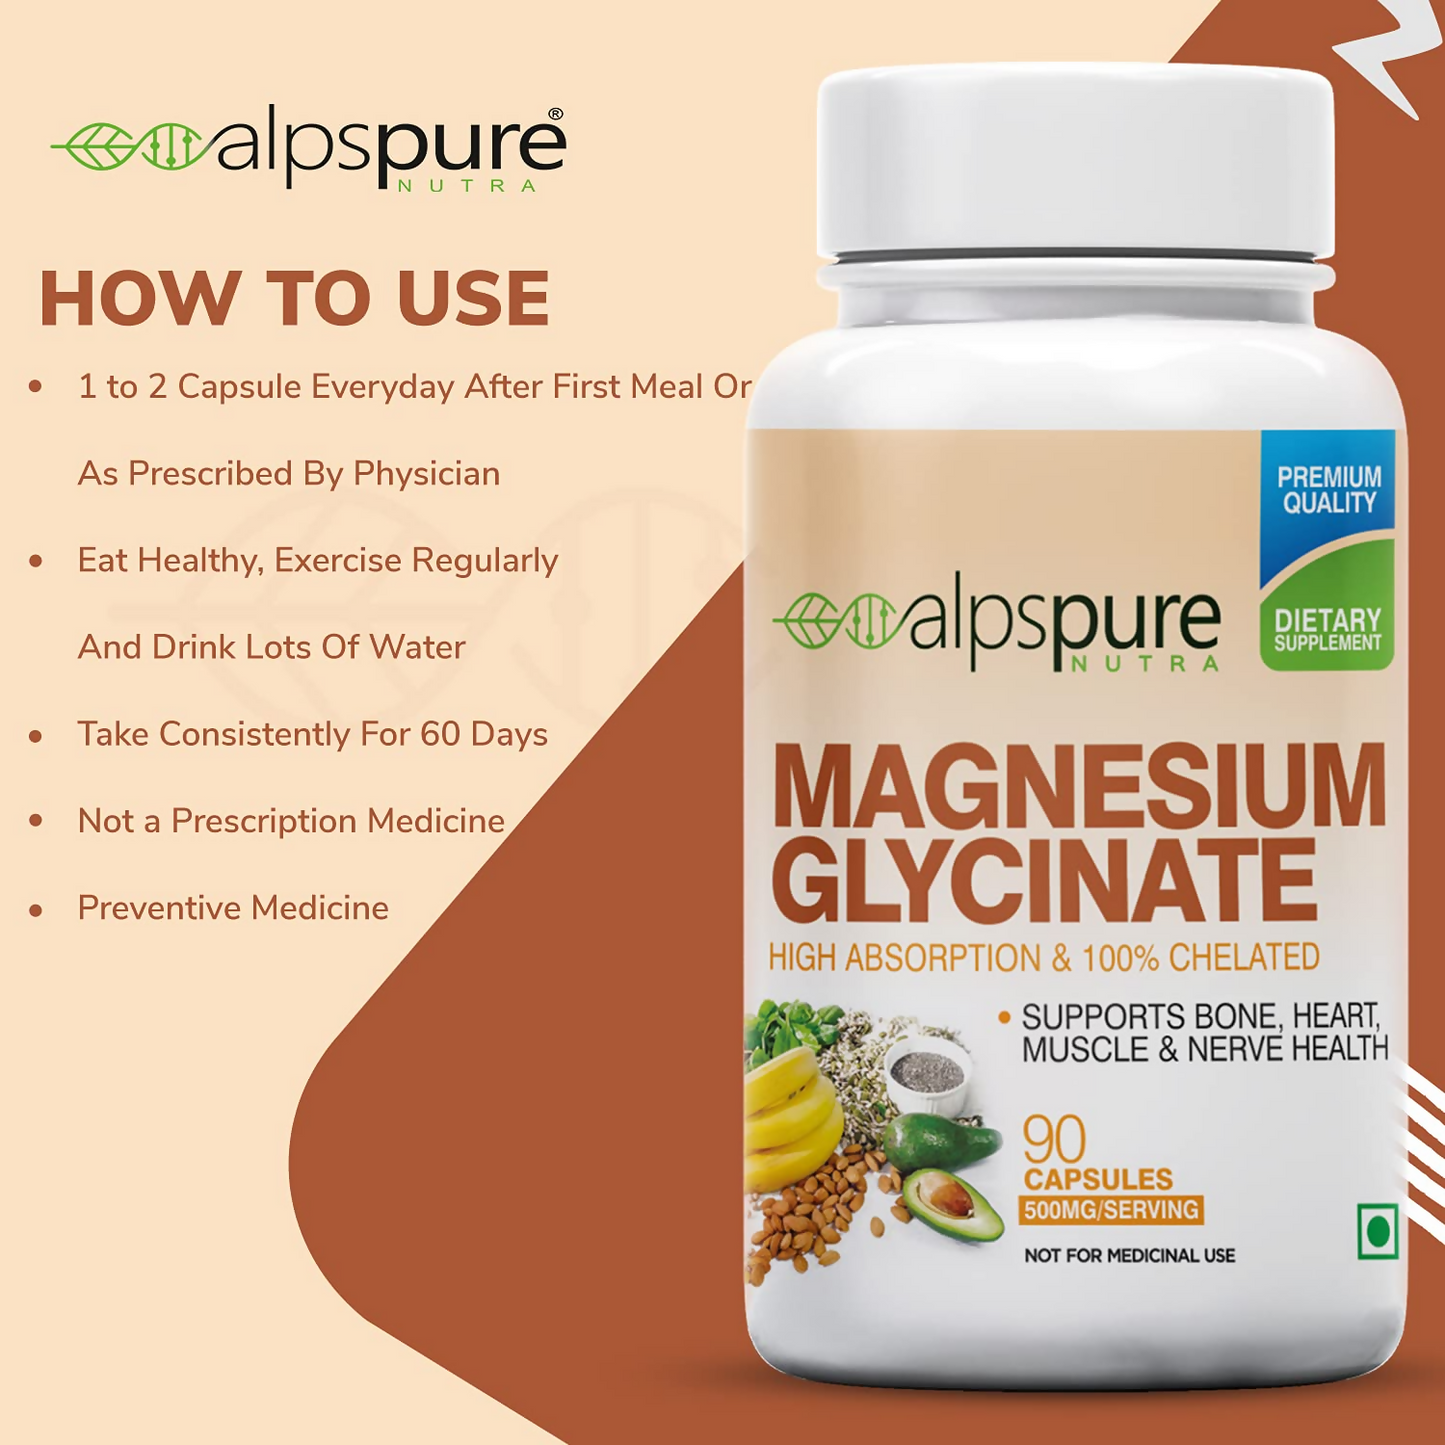 Alpspure Nutra Magnesium Glycinate Capsules